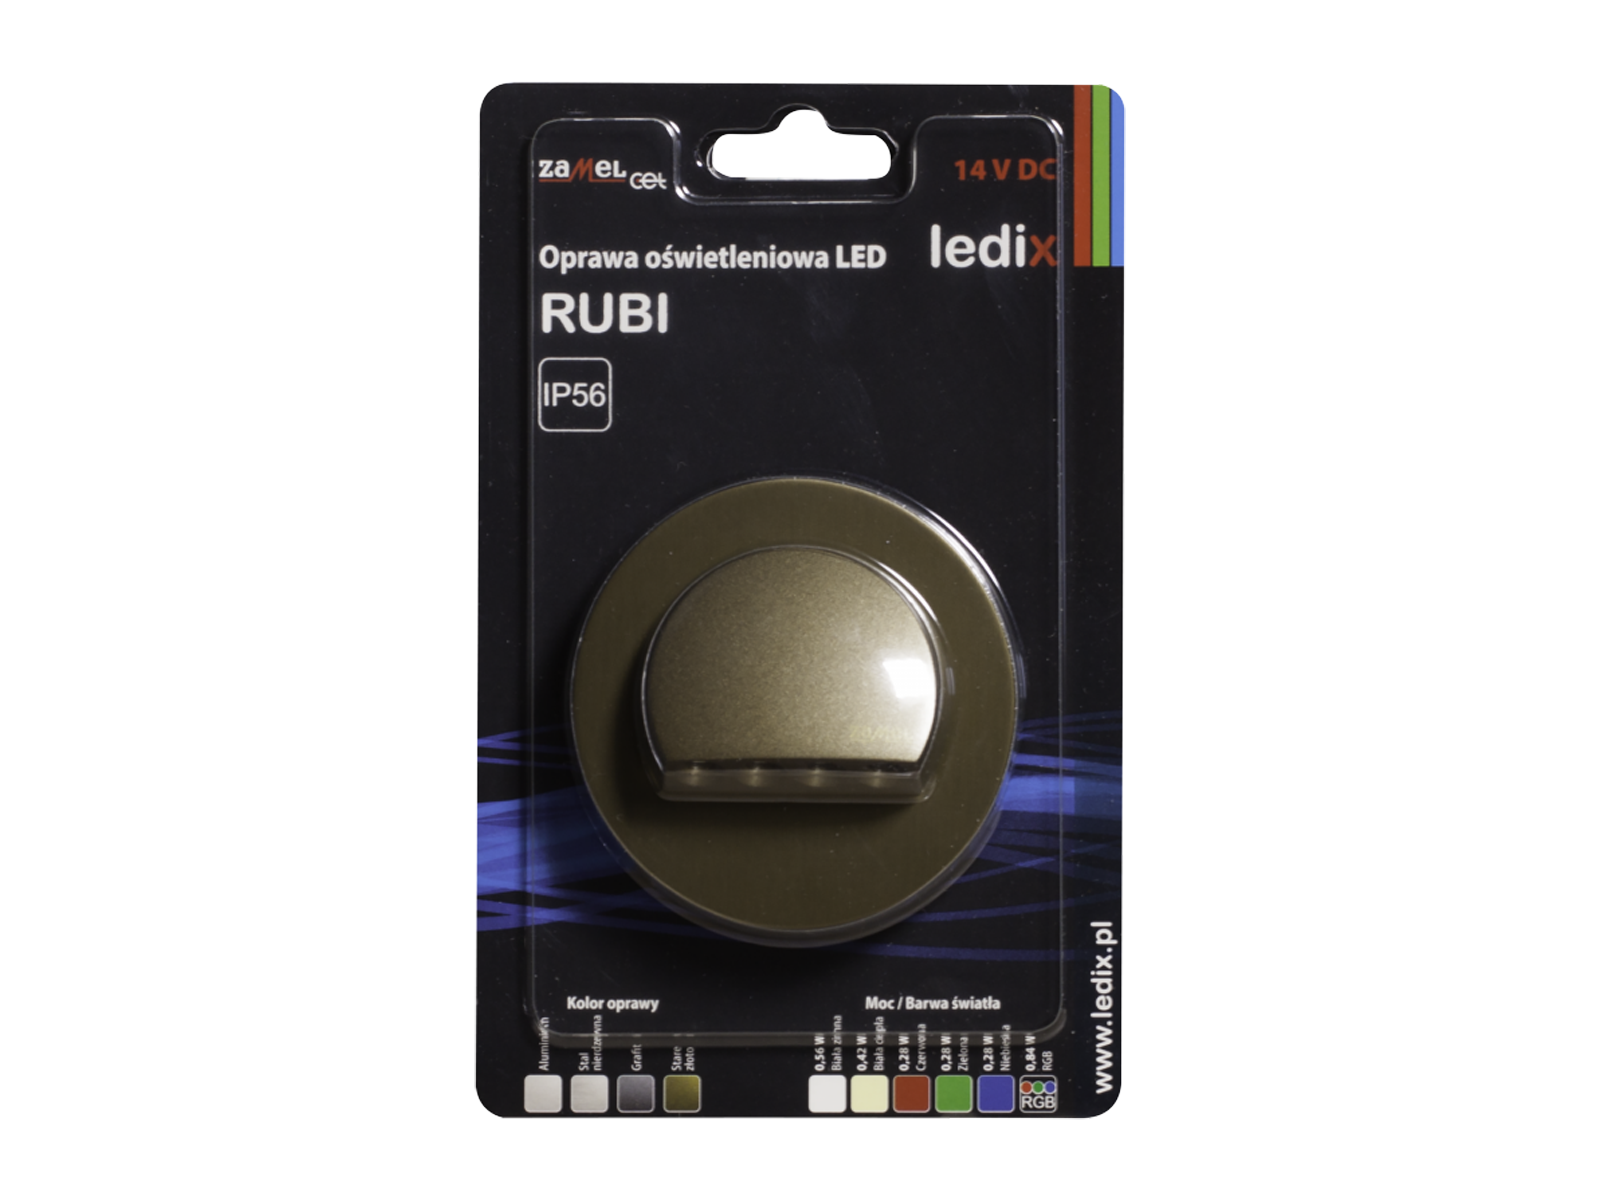 Svítidlo LED na omítku LEDIX RUBI 14V DC, zlatá patina, studená bílá, IP56